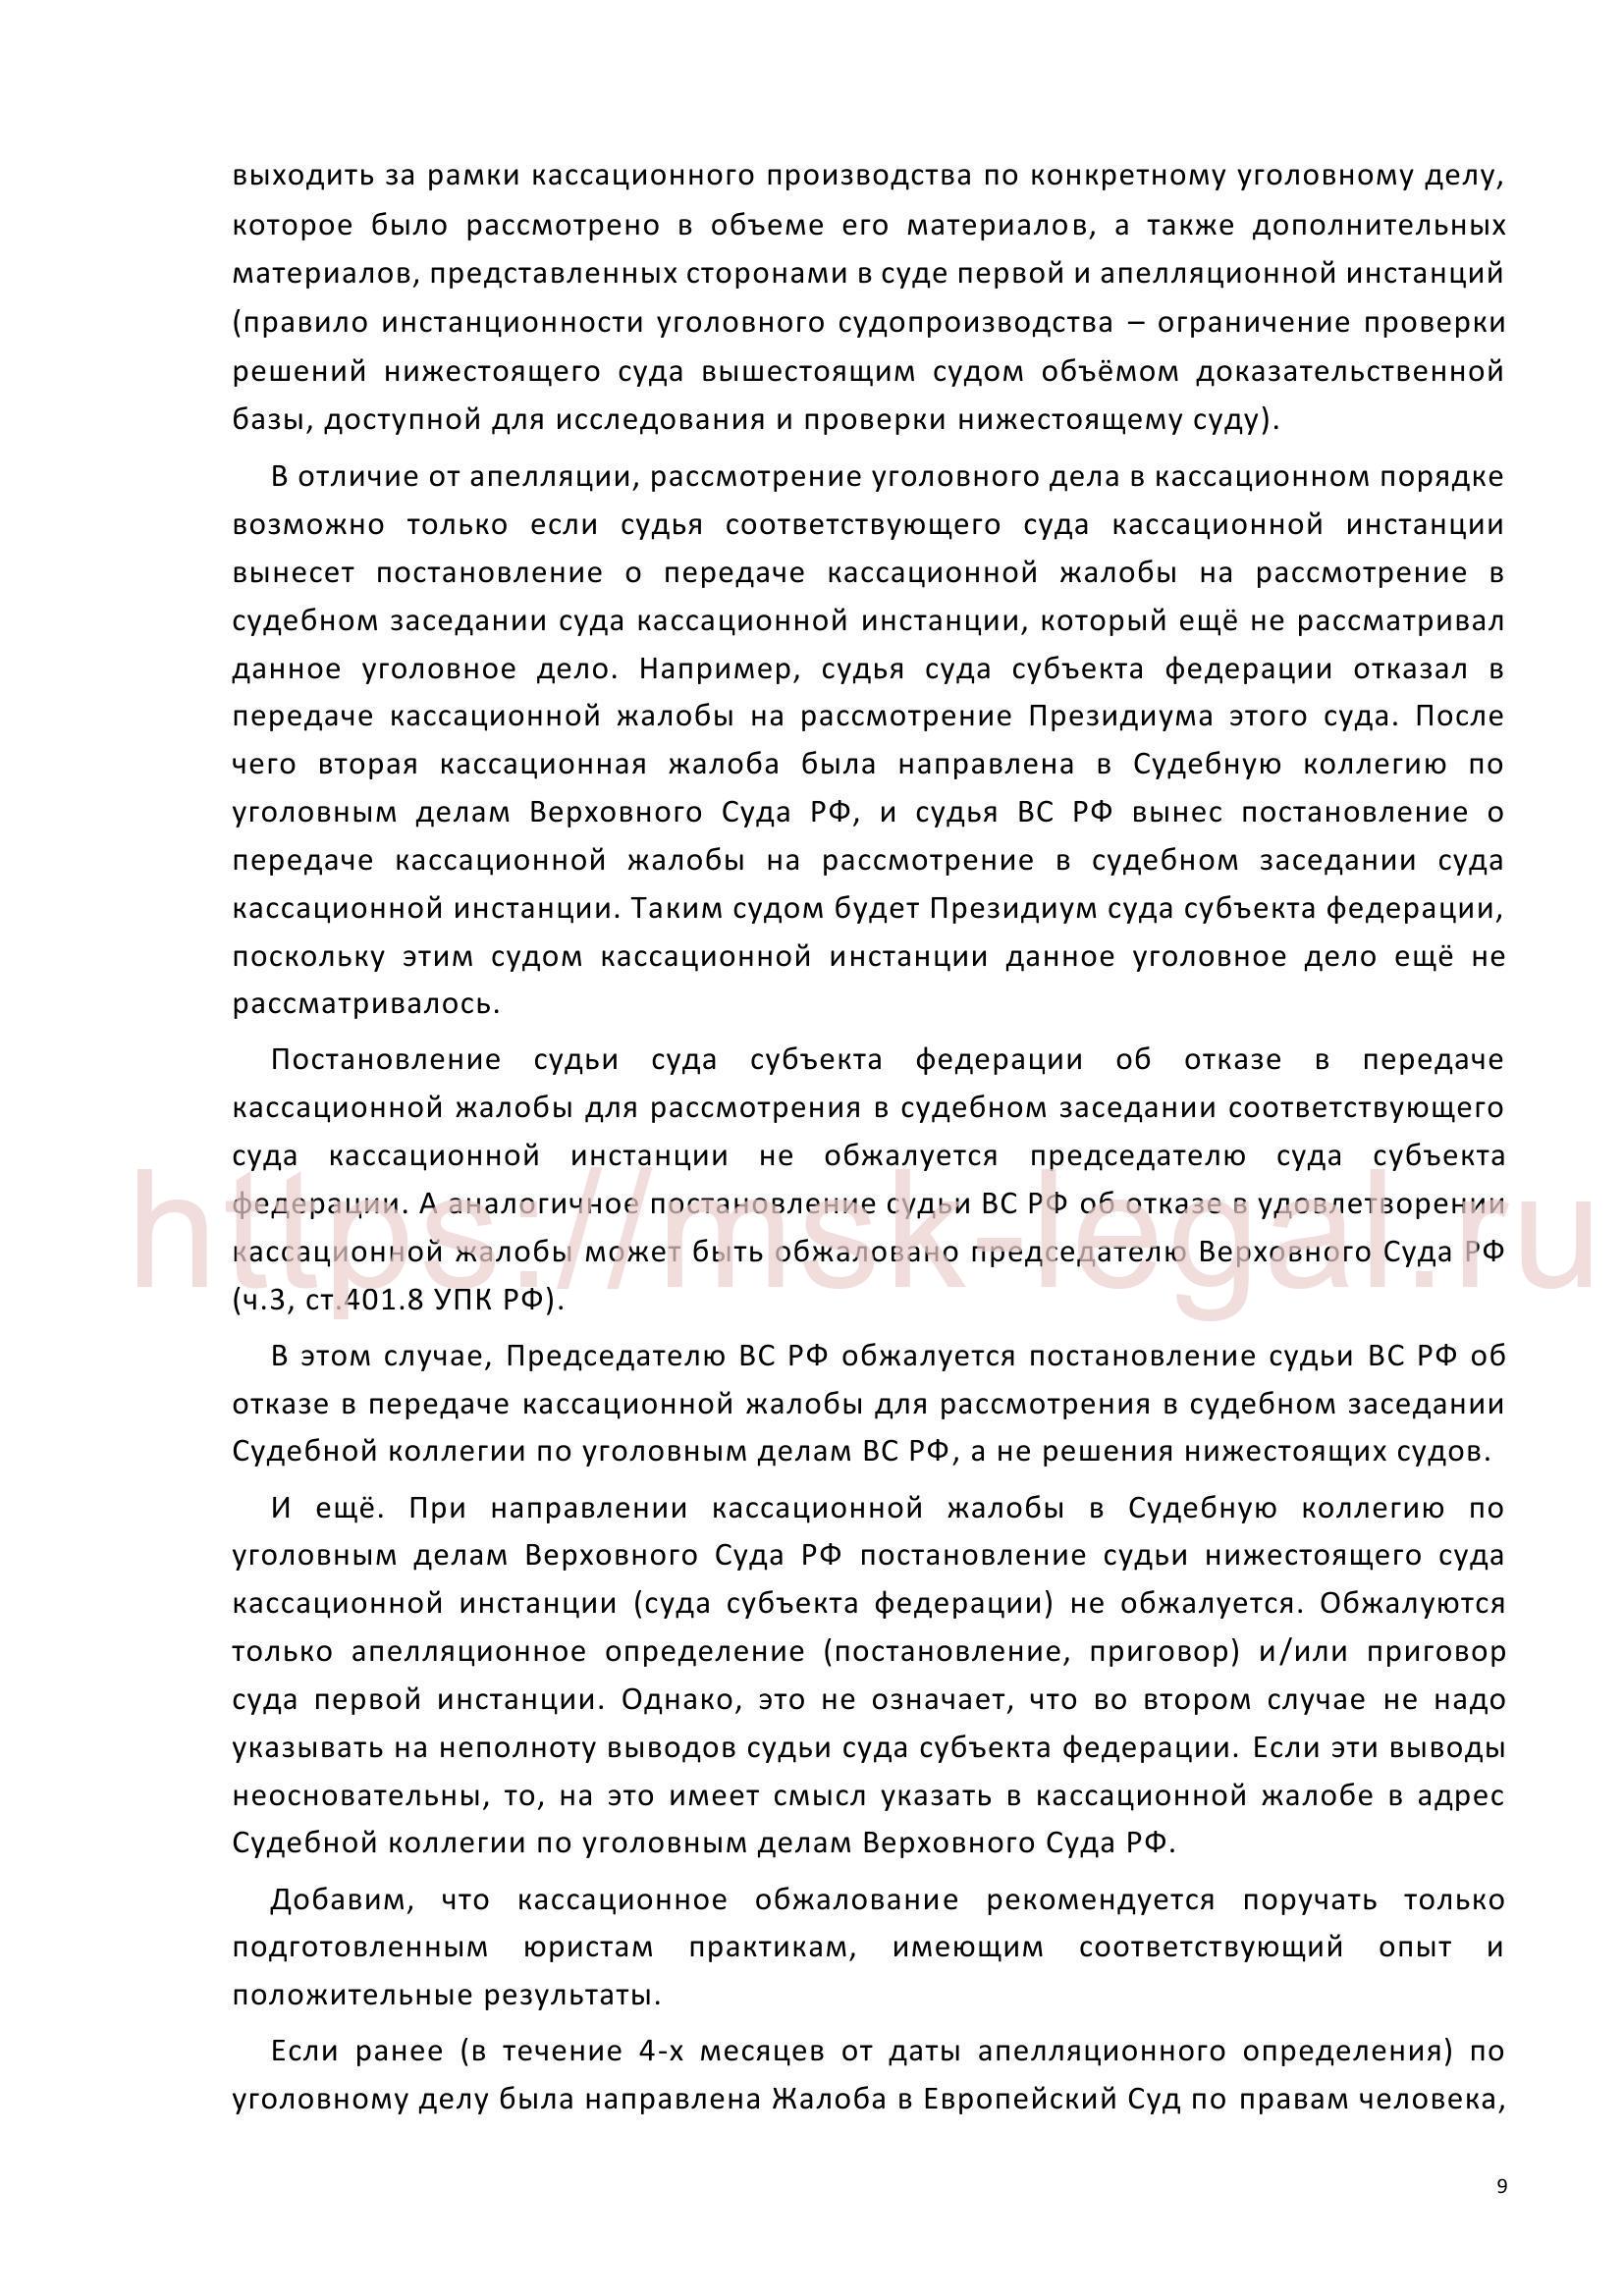 Кассационная жалоба на приговор по ст. 199 УК РФ